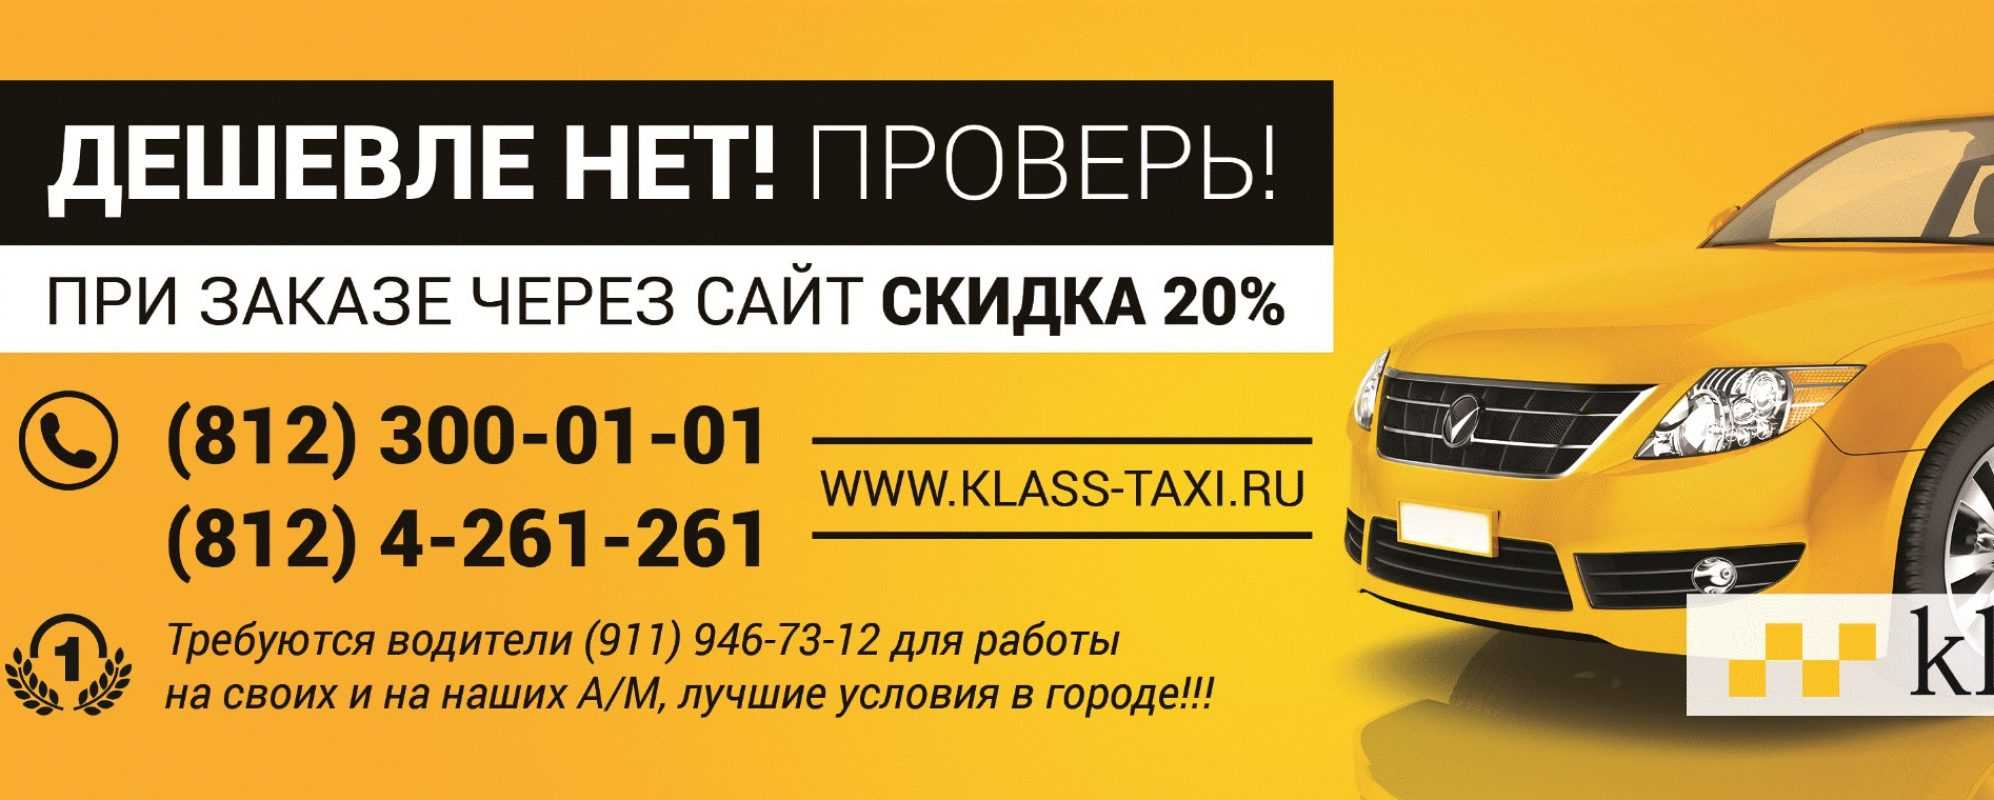 Номер телефона такси в екатеринбурге. Самое дешёвое такси. Вызов такси. Самое дешевое такси в Москве. Самое дешевое такси номер.